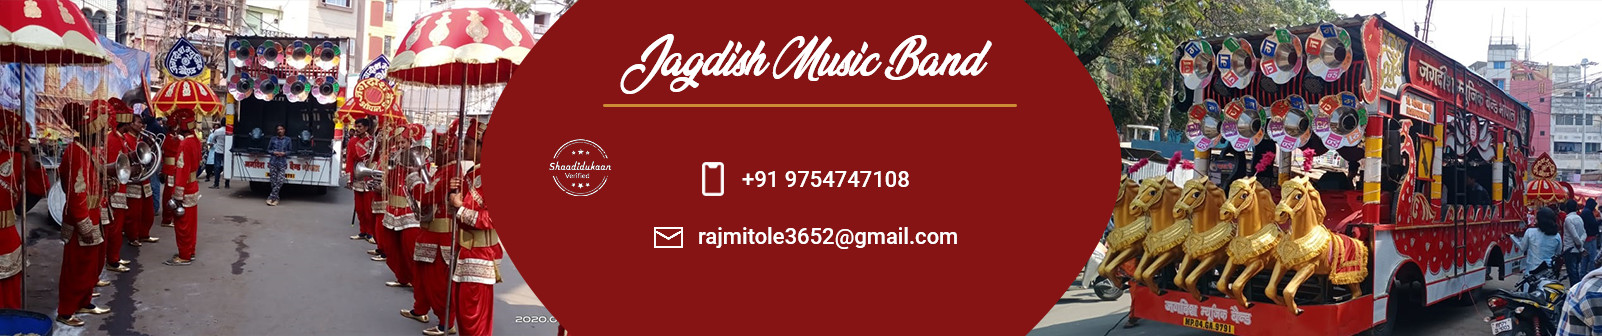 jagdish-music-band